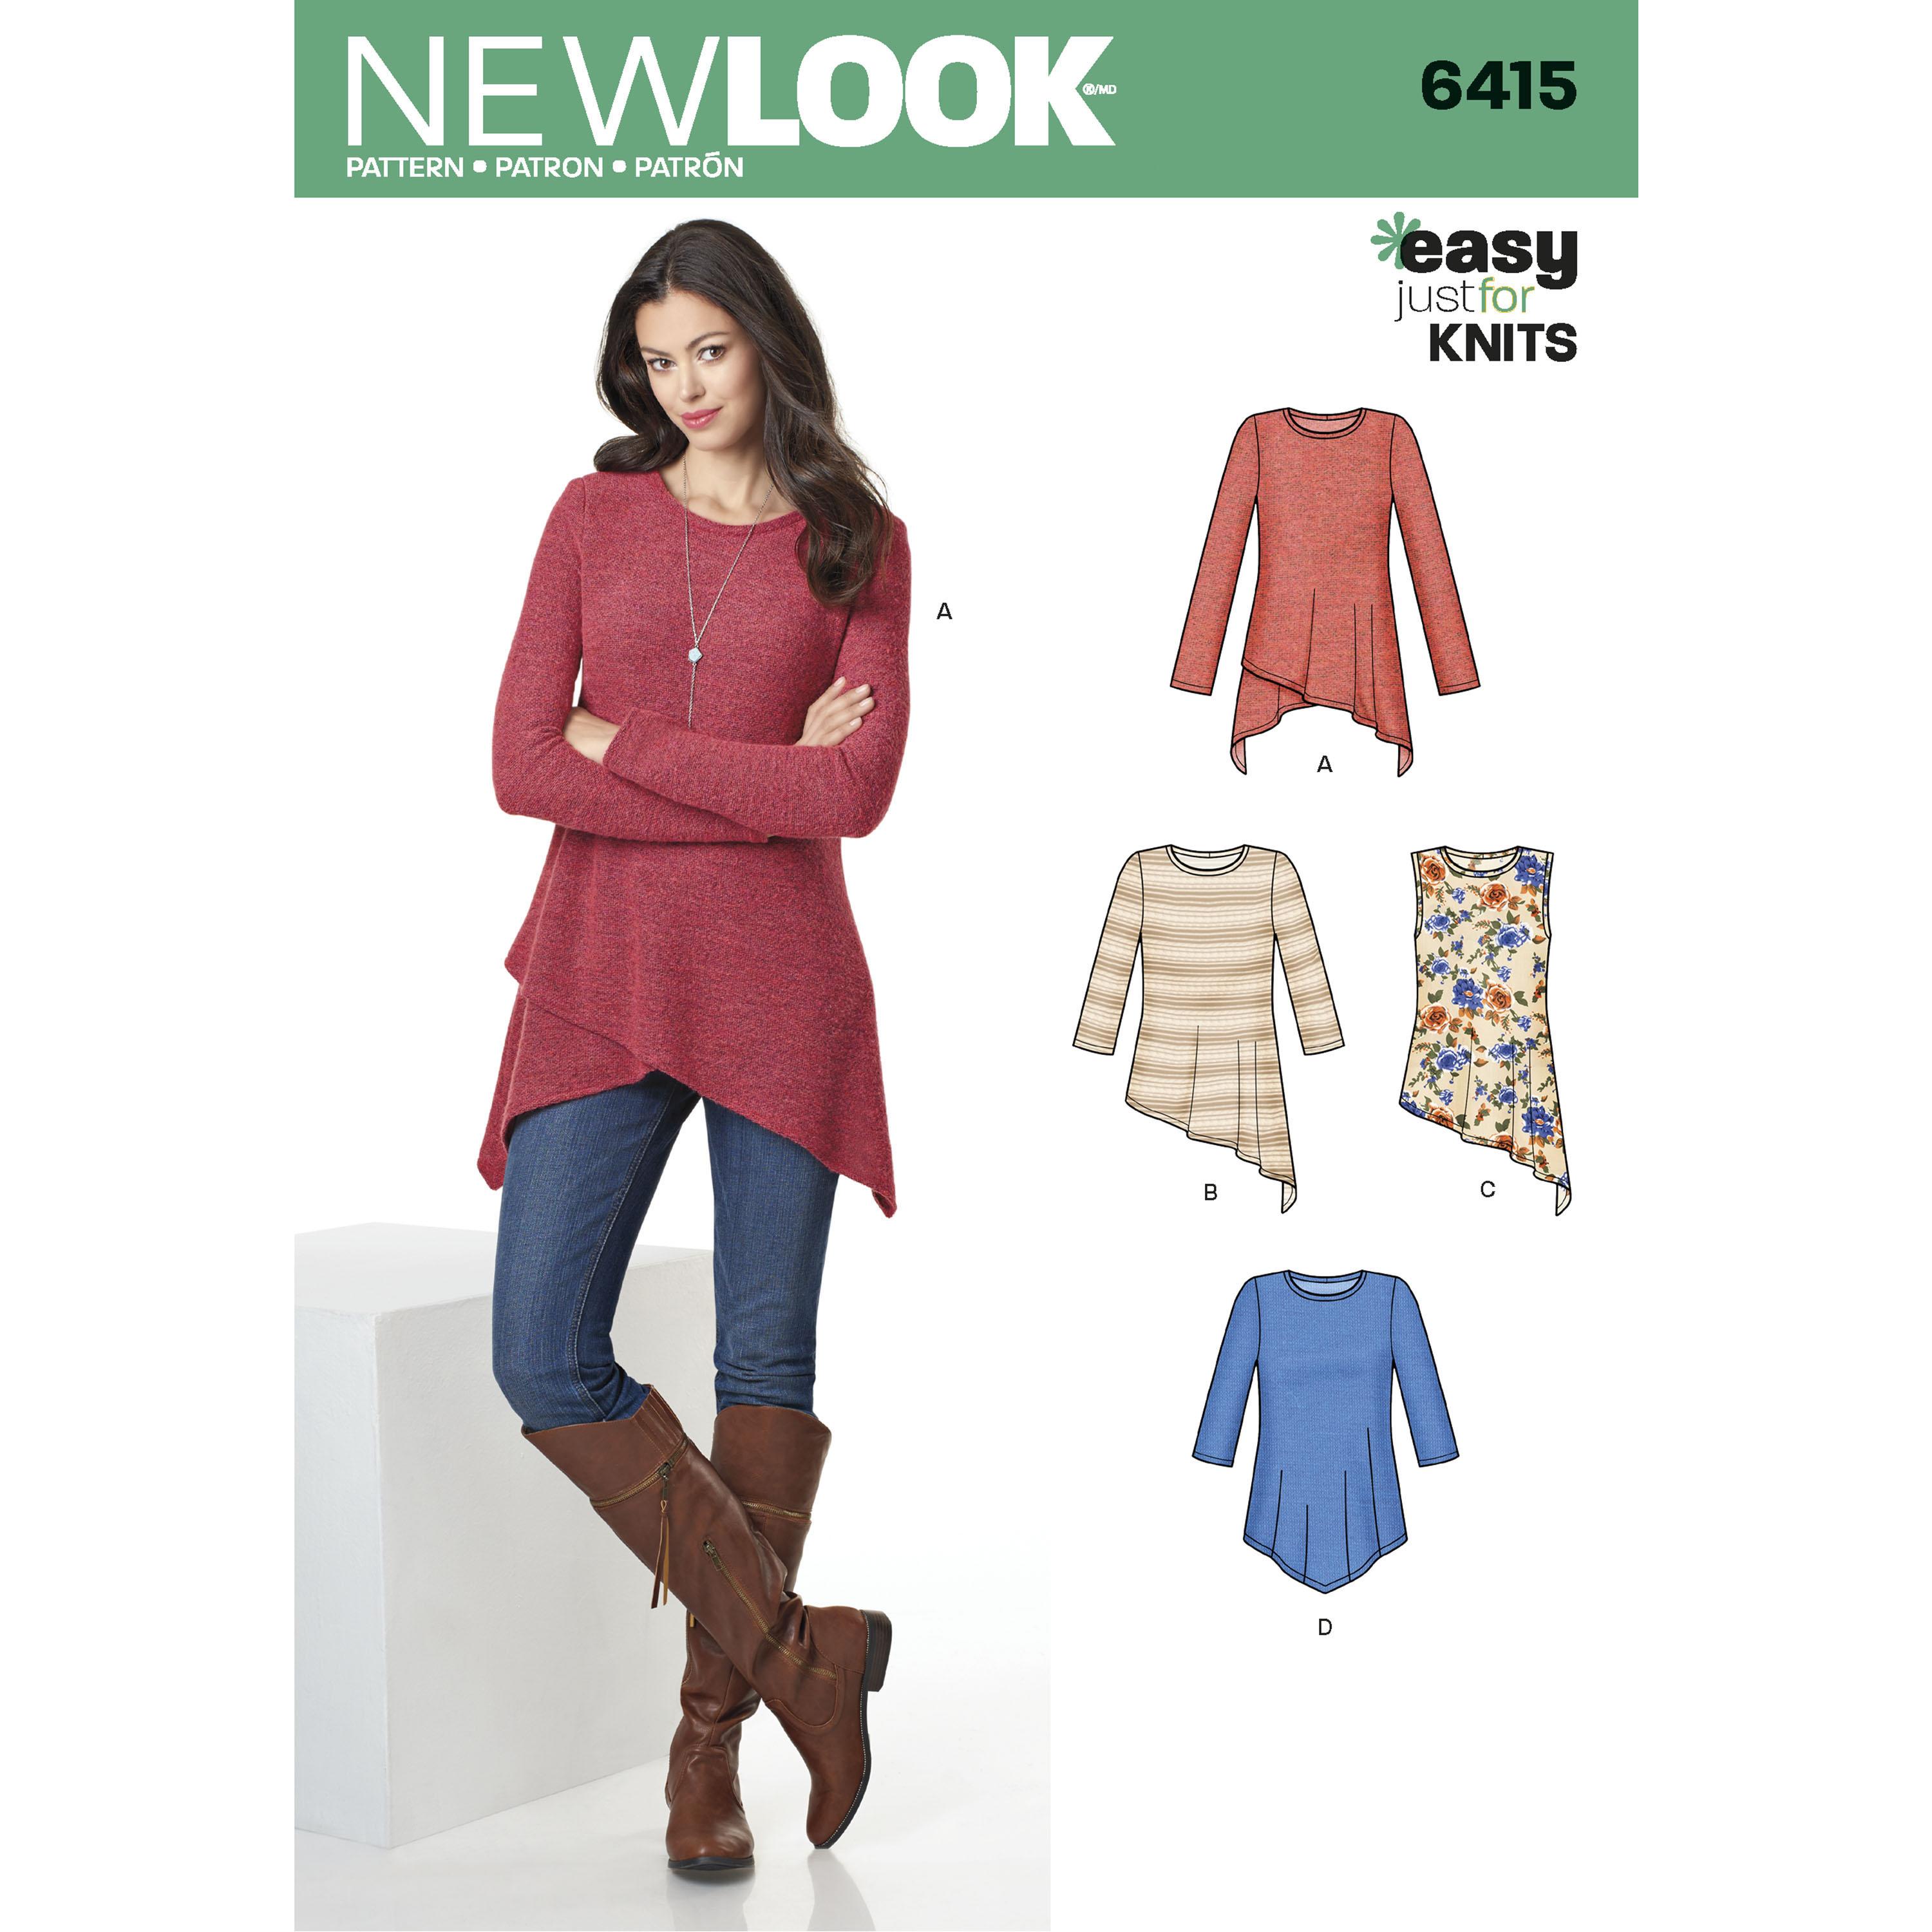 NewLook N6415 Misses' Knit Tunics